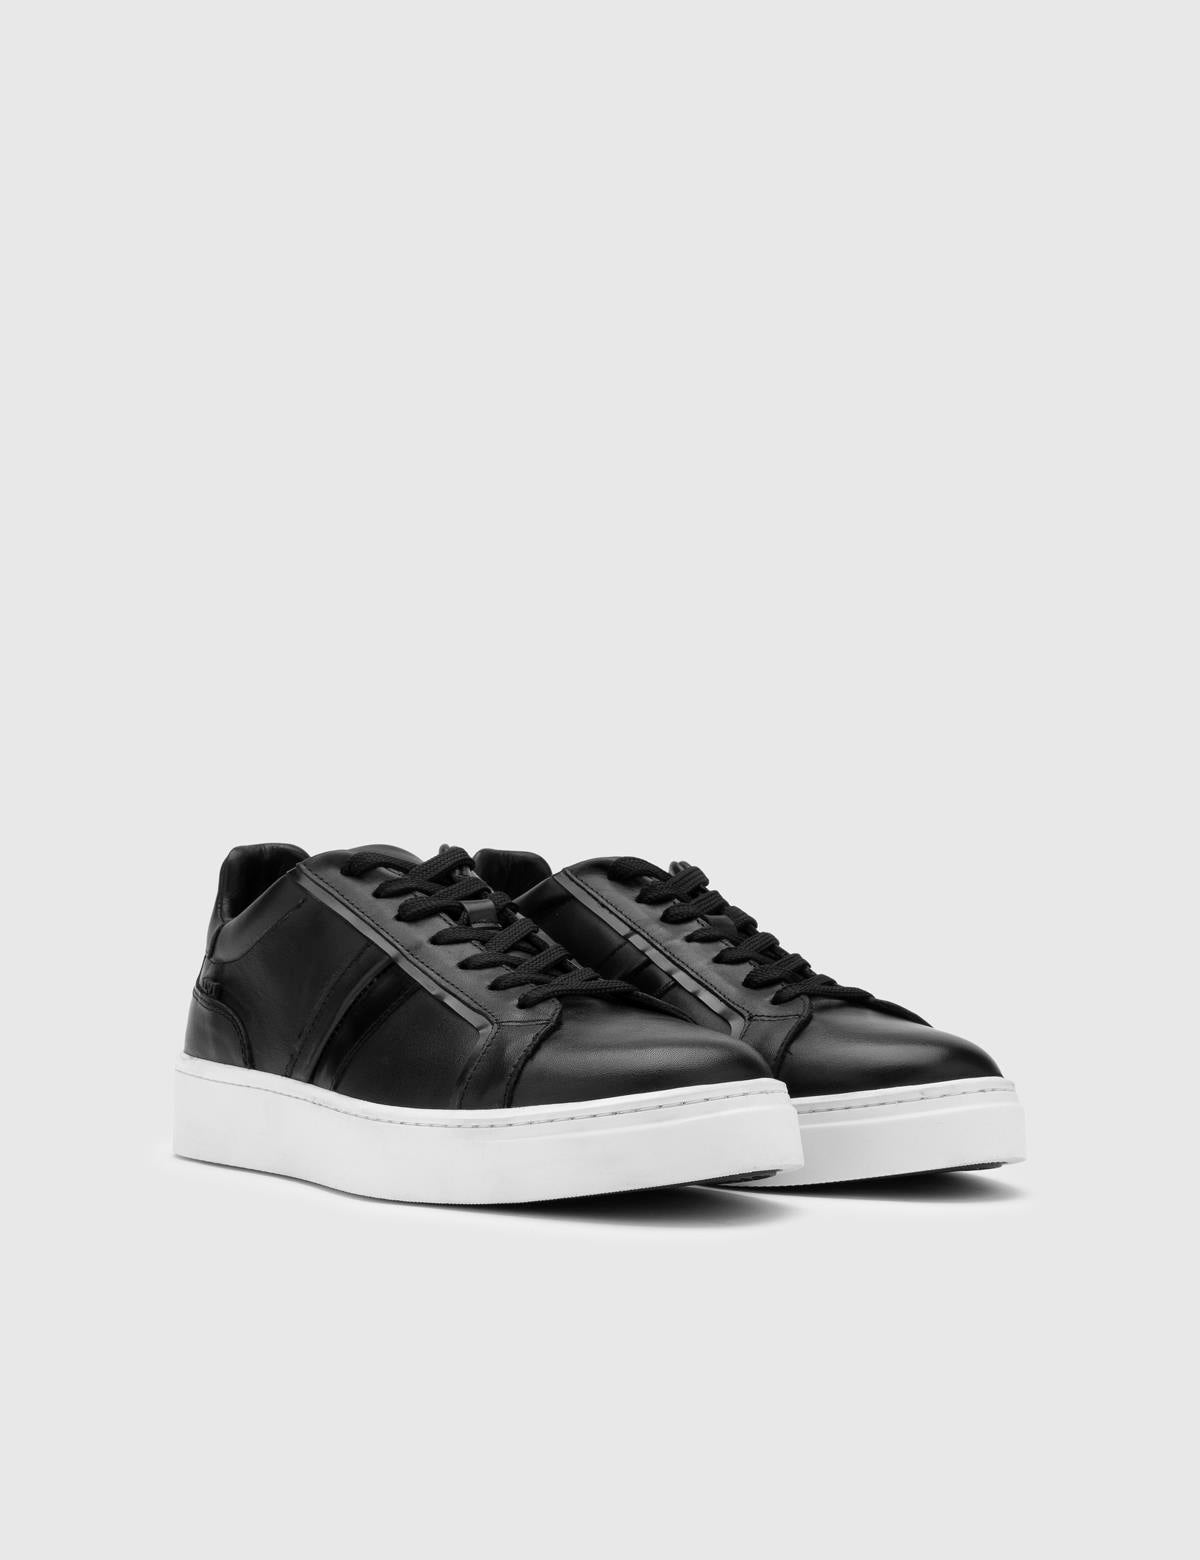 Ezri Herren-Sneaker aus schwarzem Leder